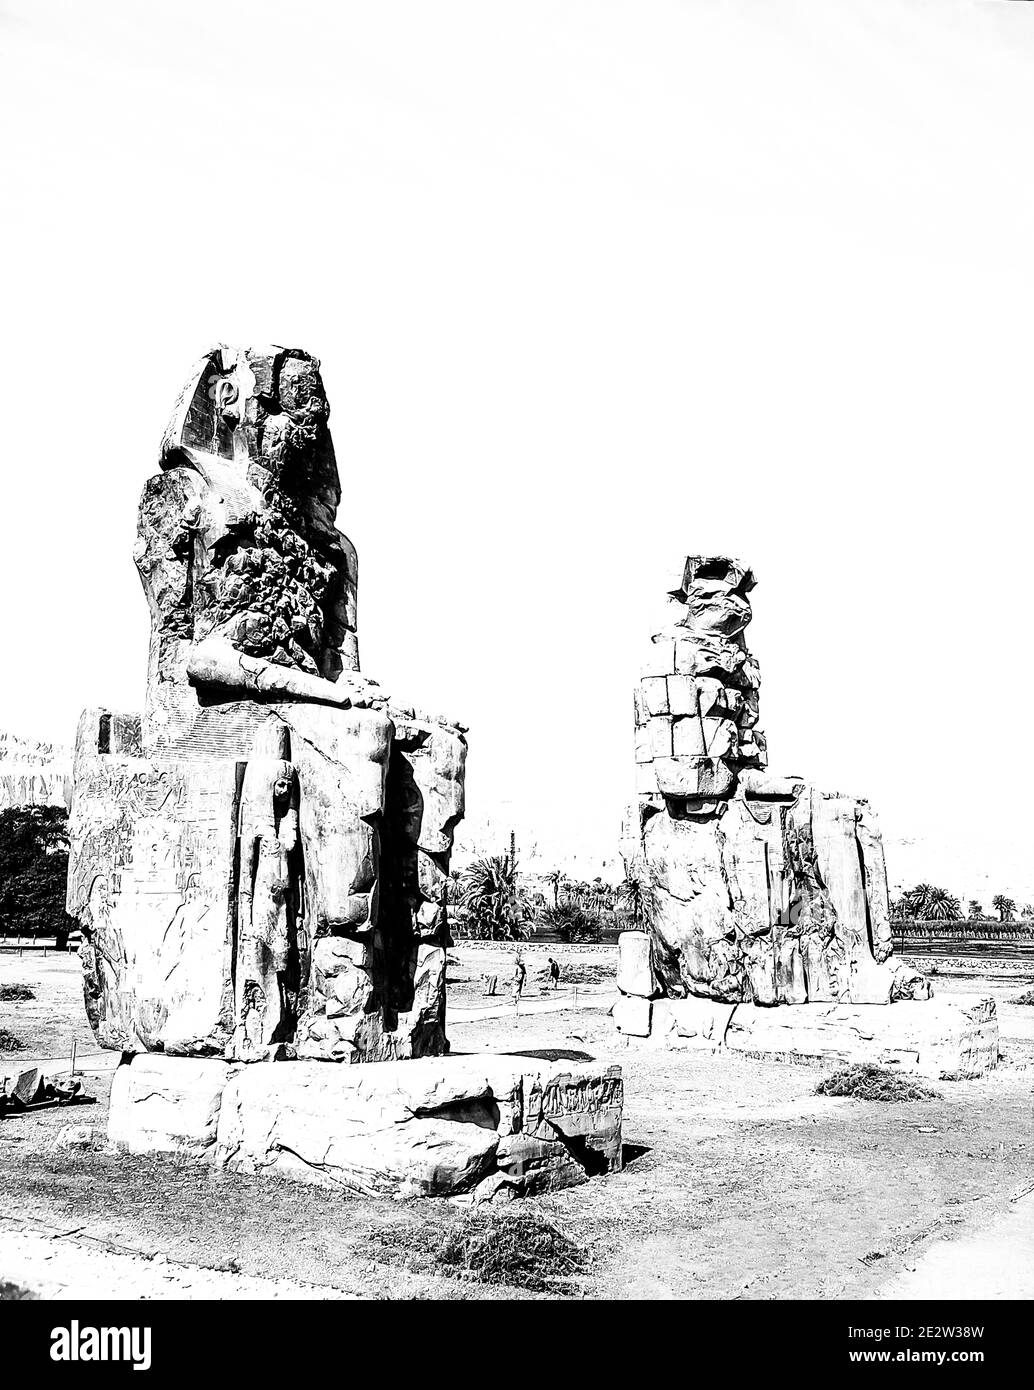 Louxor. C'est le site archéologique 1350BC au Colossi de Memnon de l'Égypte ancienne, non loin du Nil et de la ville de Louxor connu auparavant sous le nom de Thèbes. Les statues sont du Pharaon Amenhotep III, il y a deux petites statues à ses pieds, l'une étant sa mère, l'autre son épouse. Initialement construit pour protéger l'entrée du temple d'Amenotep contre le mal, ils ont également été vus pour protéger la rive ouest du Nil. Les Colossi ont subi des dommages importants après le tremblement de terre, mais après 3500 ans, ils restent debout. Banque D'Images